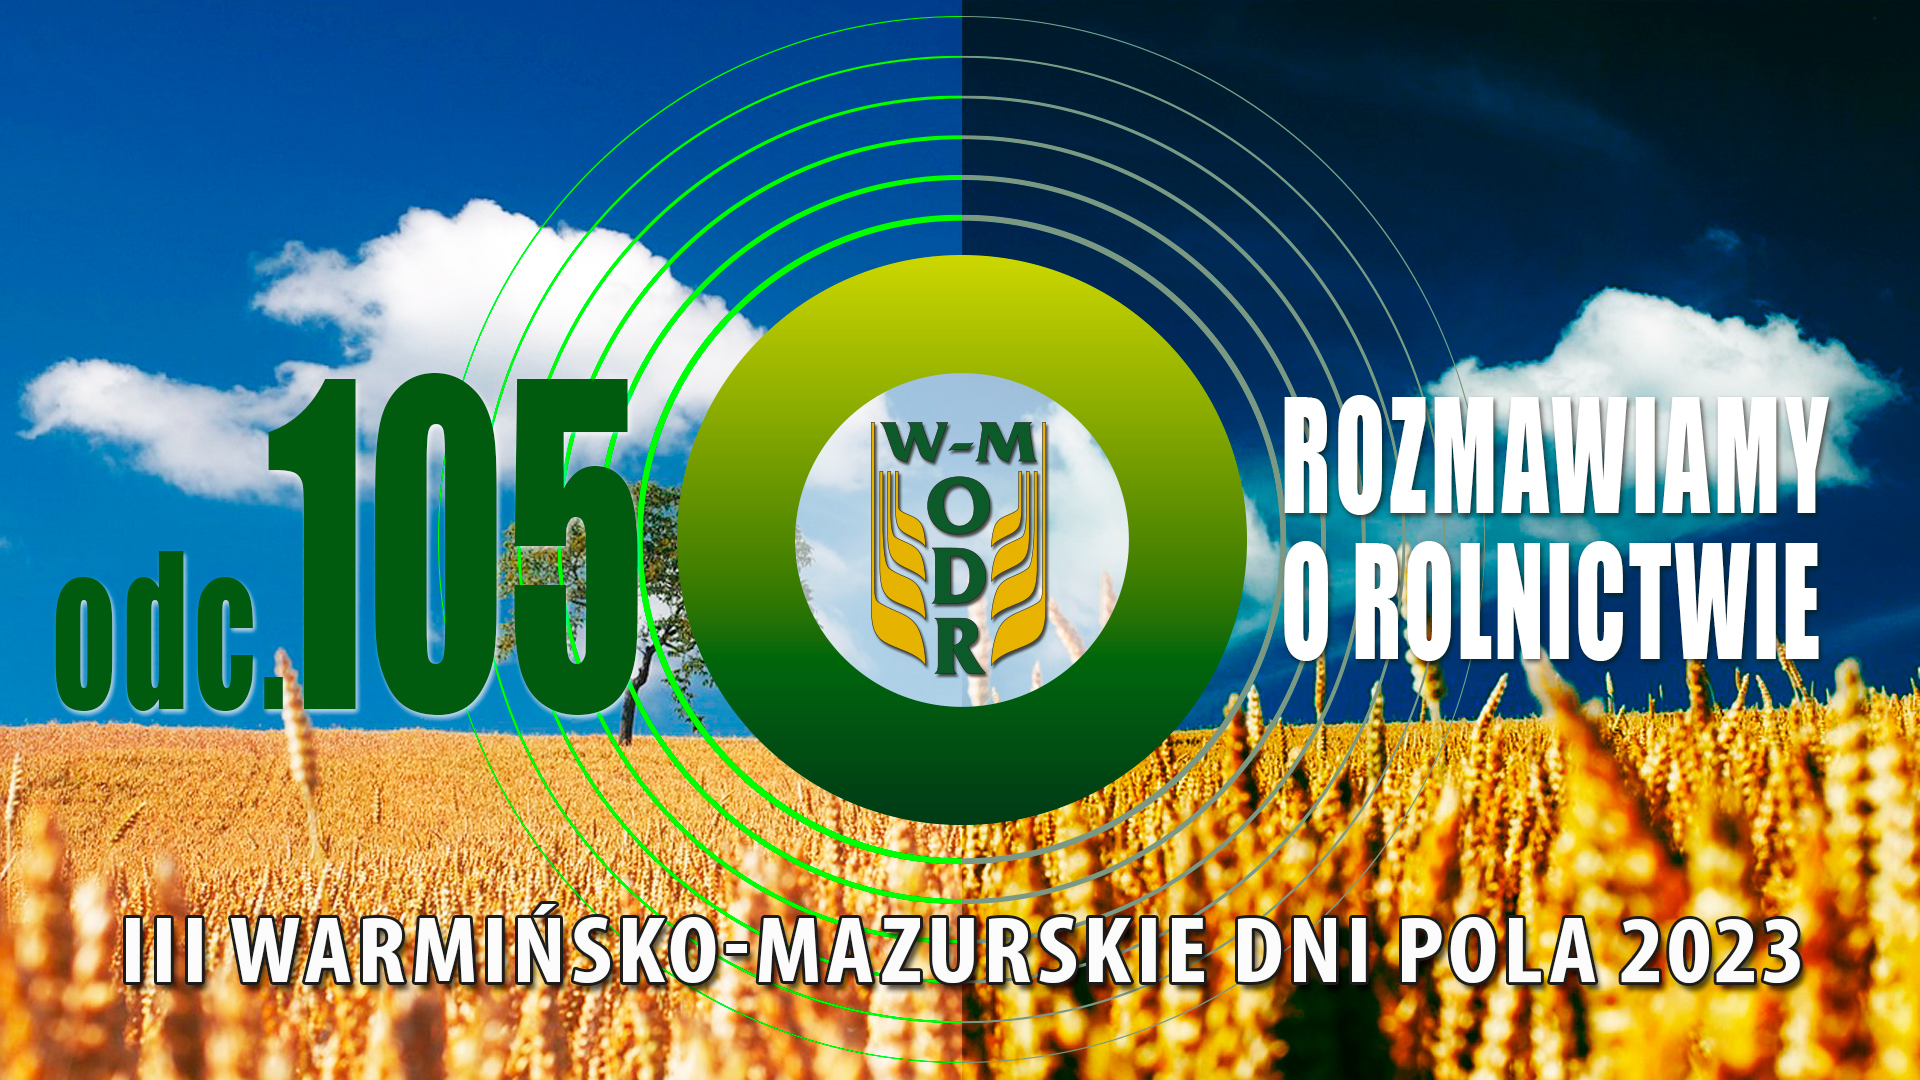 "Rozmawiamy o rolnictwie" odc. 105 - III Warmińsko - Mazurskie Dni Pola 2023